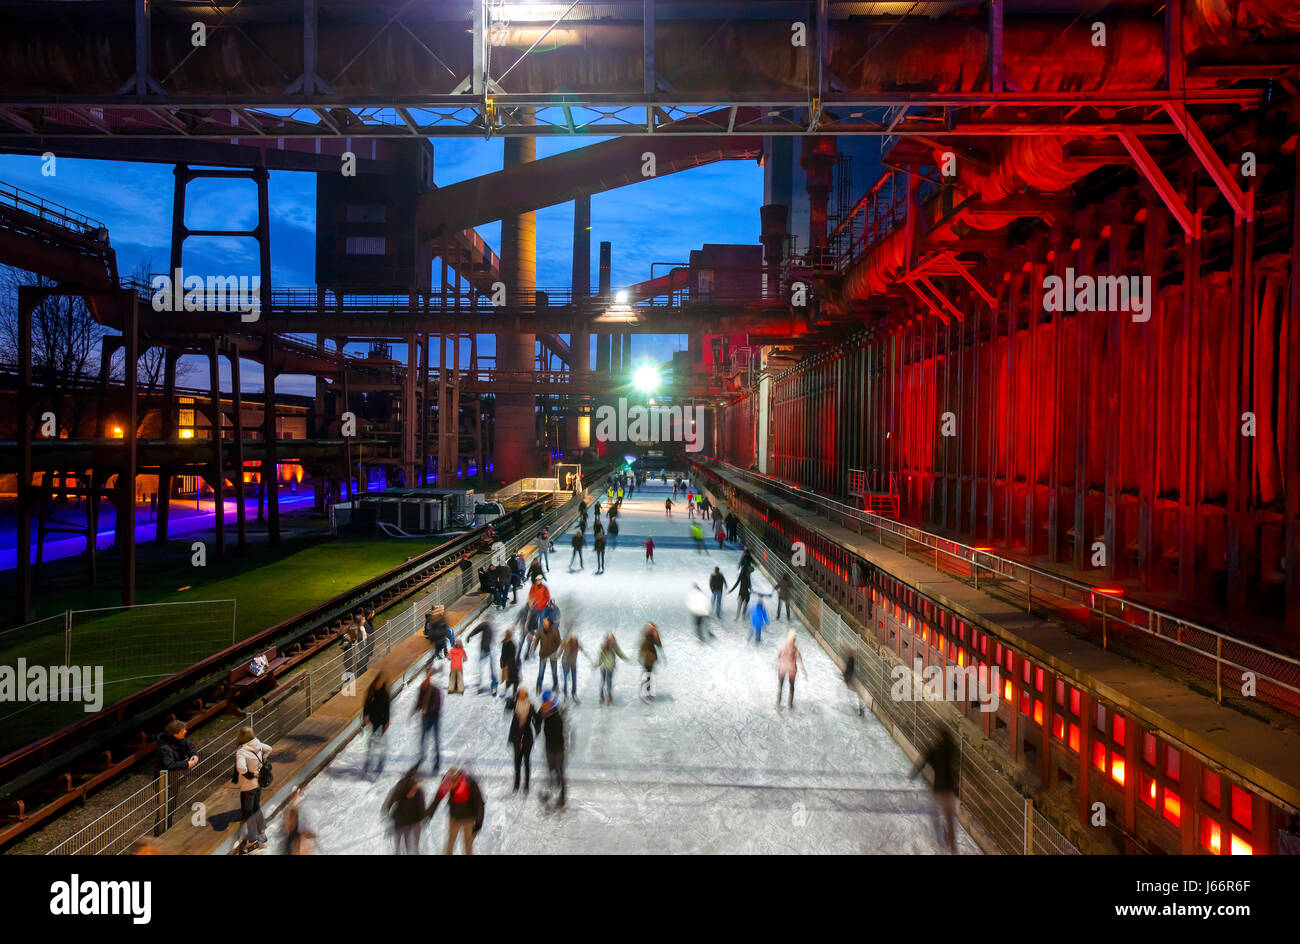 Pista de patinaje sobre hielo, pista de hielo, cocinar vegetales Zollverein mina de carbón Zollverein, Complejo Industrial, patrimonio de la humanidad UNESCO Zeche Zollverein, Essen, Foto de stock